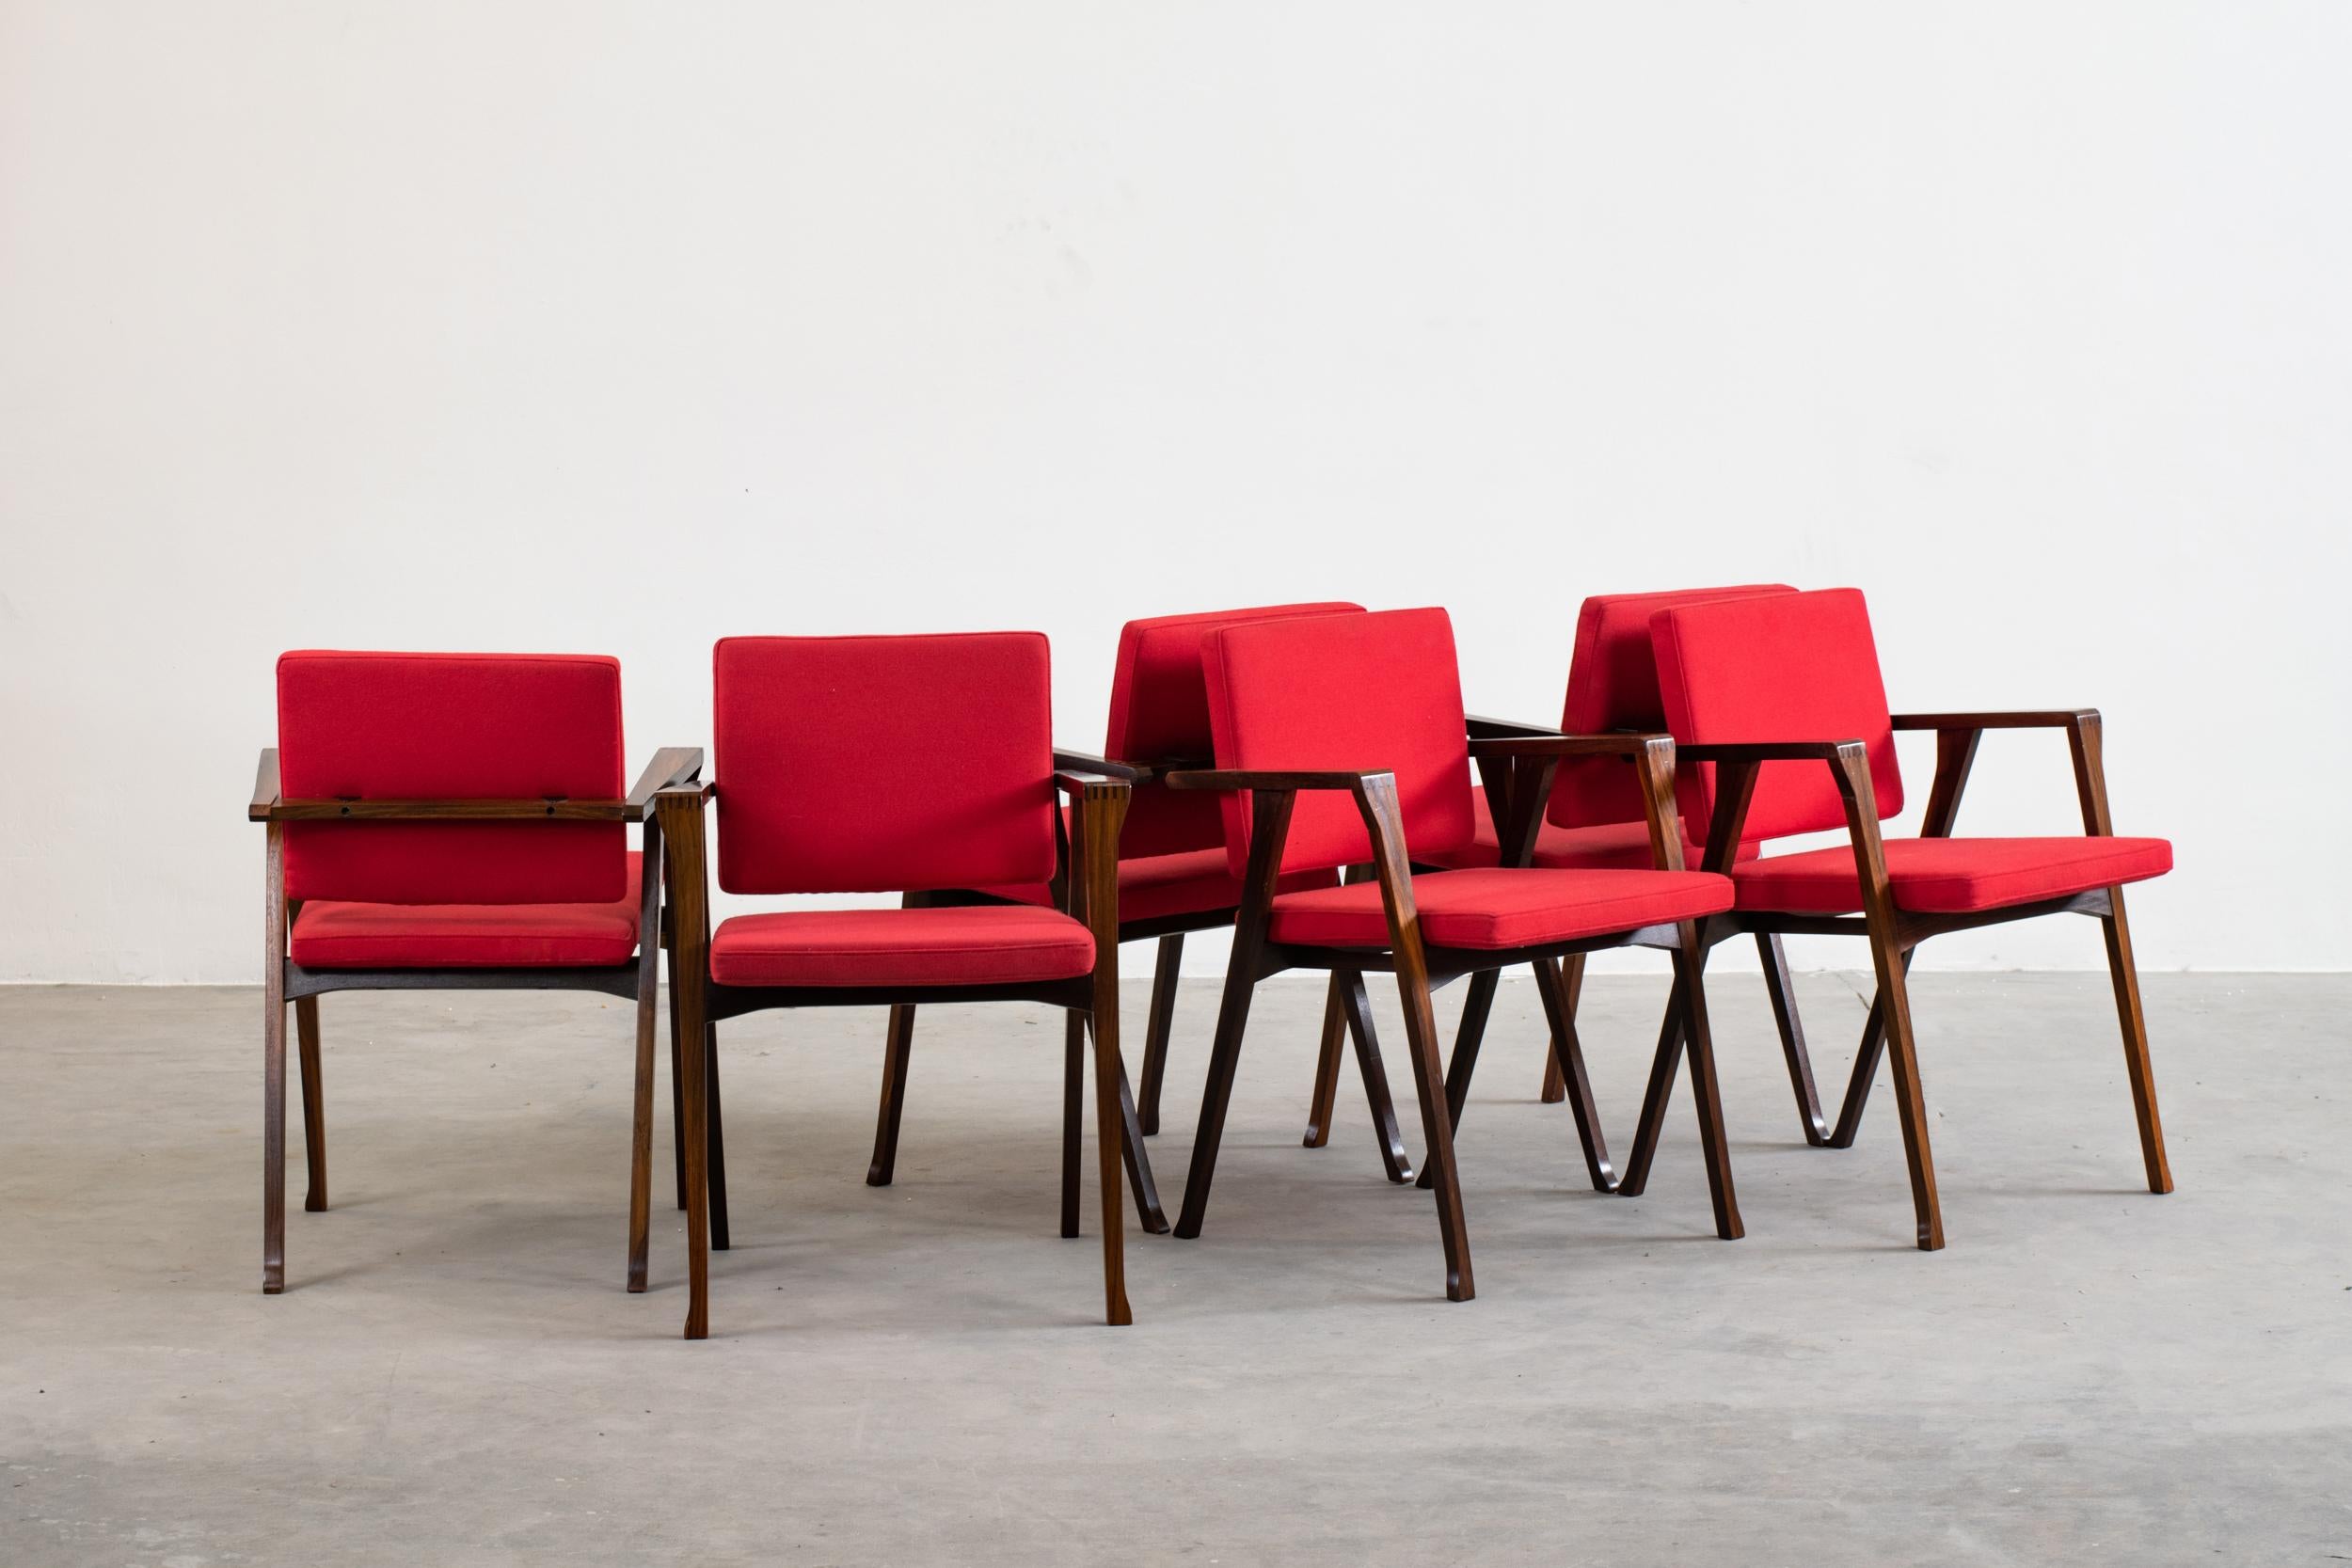 Set of six Luisa chairs with a wooden structure upholstered in red fabric, designed by Franco Albini and produced by Poggi Pavia, Italy.
Licterature: Bosoni G., Bucci F., Il design e gli interni di Franco Albini, Mondadori Electa, 2016, p. 103.